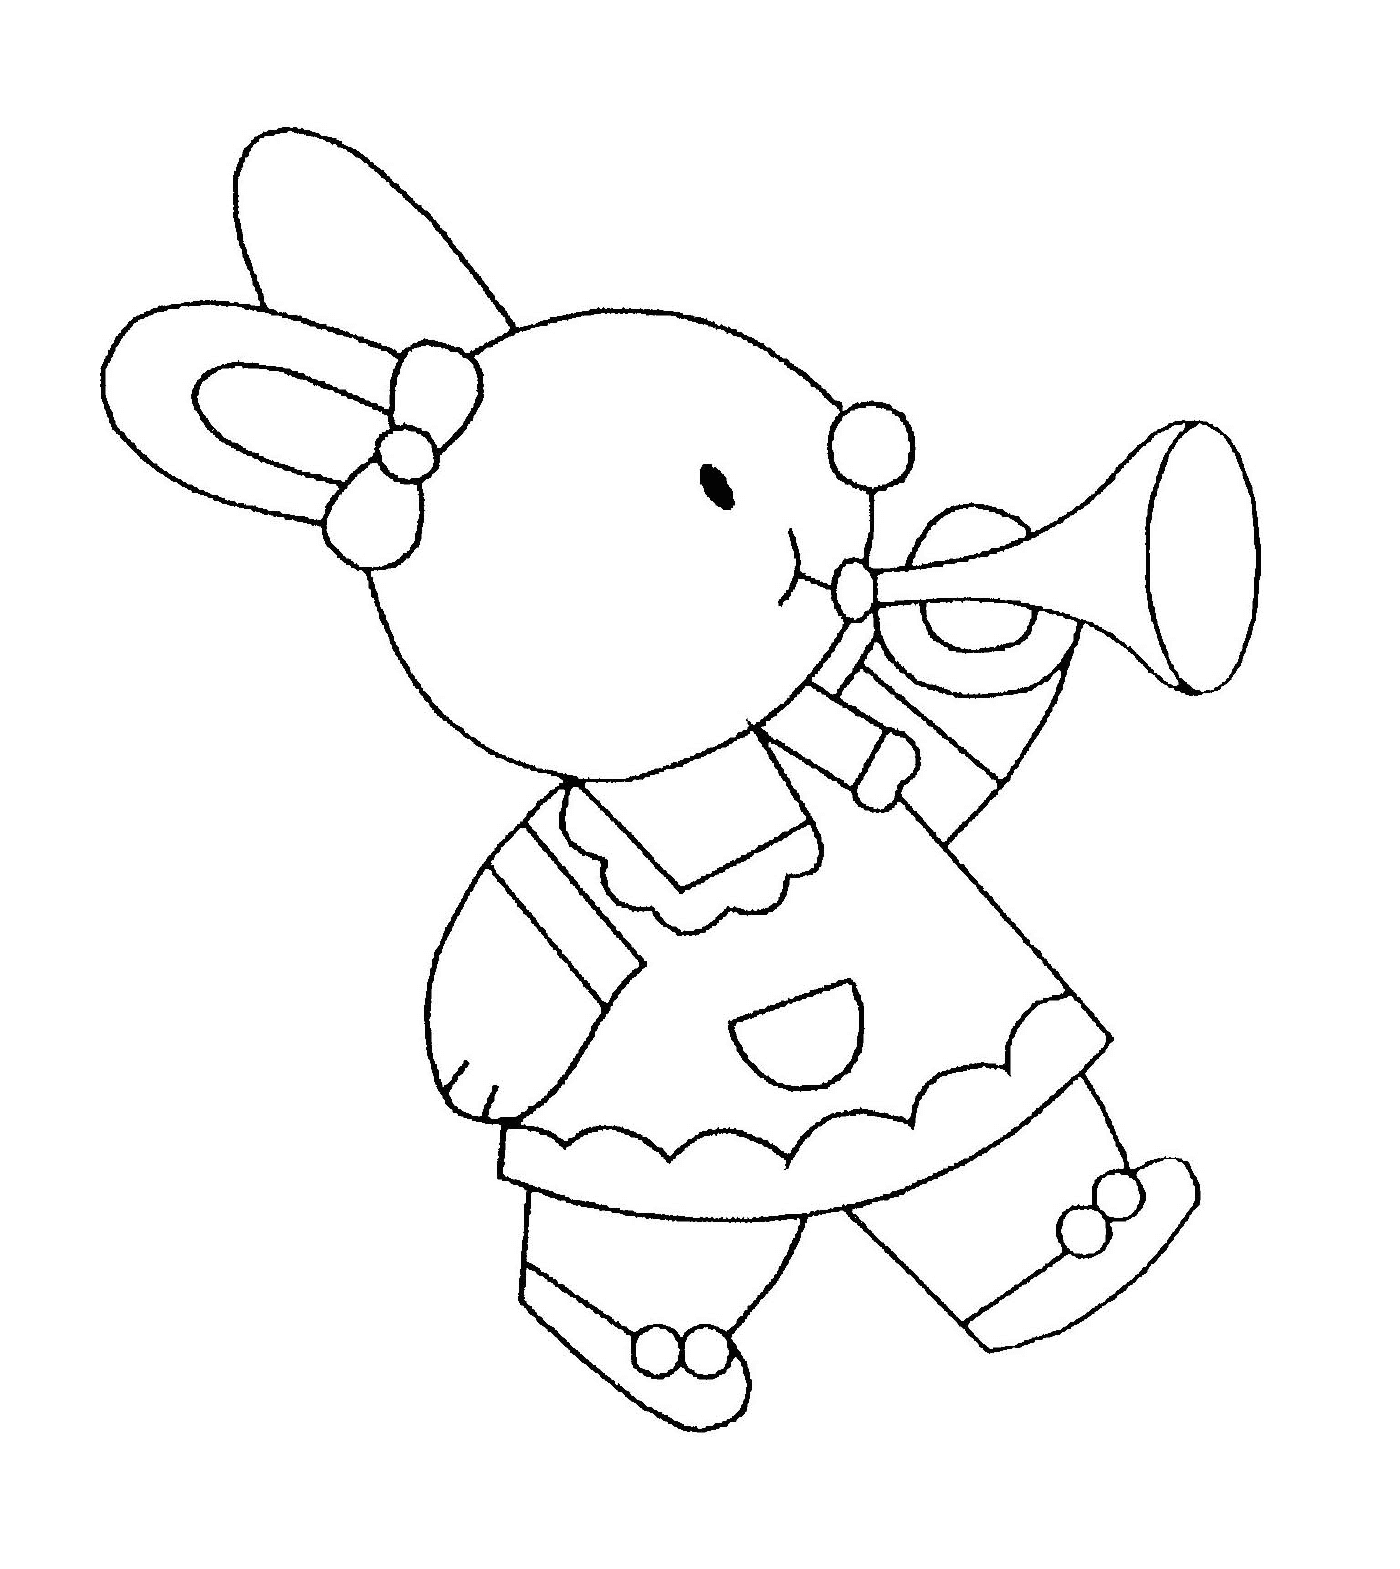  Музыкантный кролик с трубой 